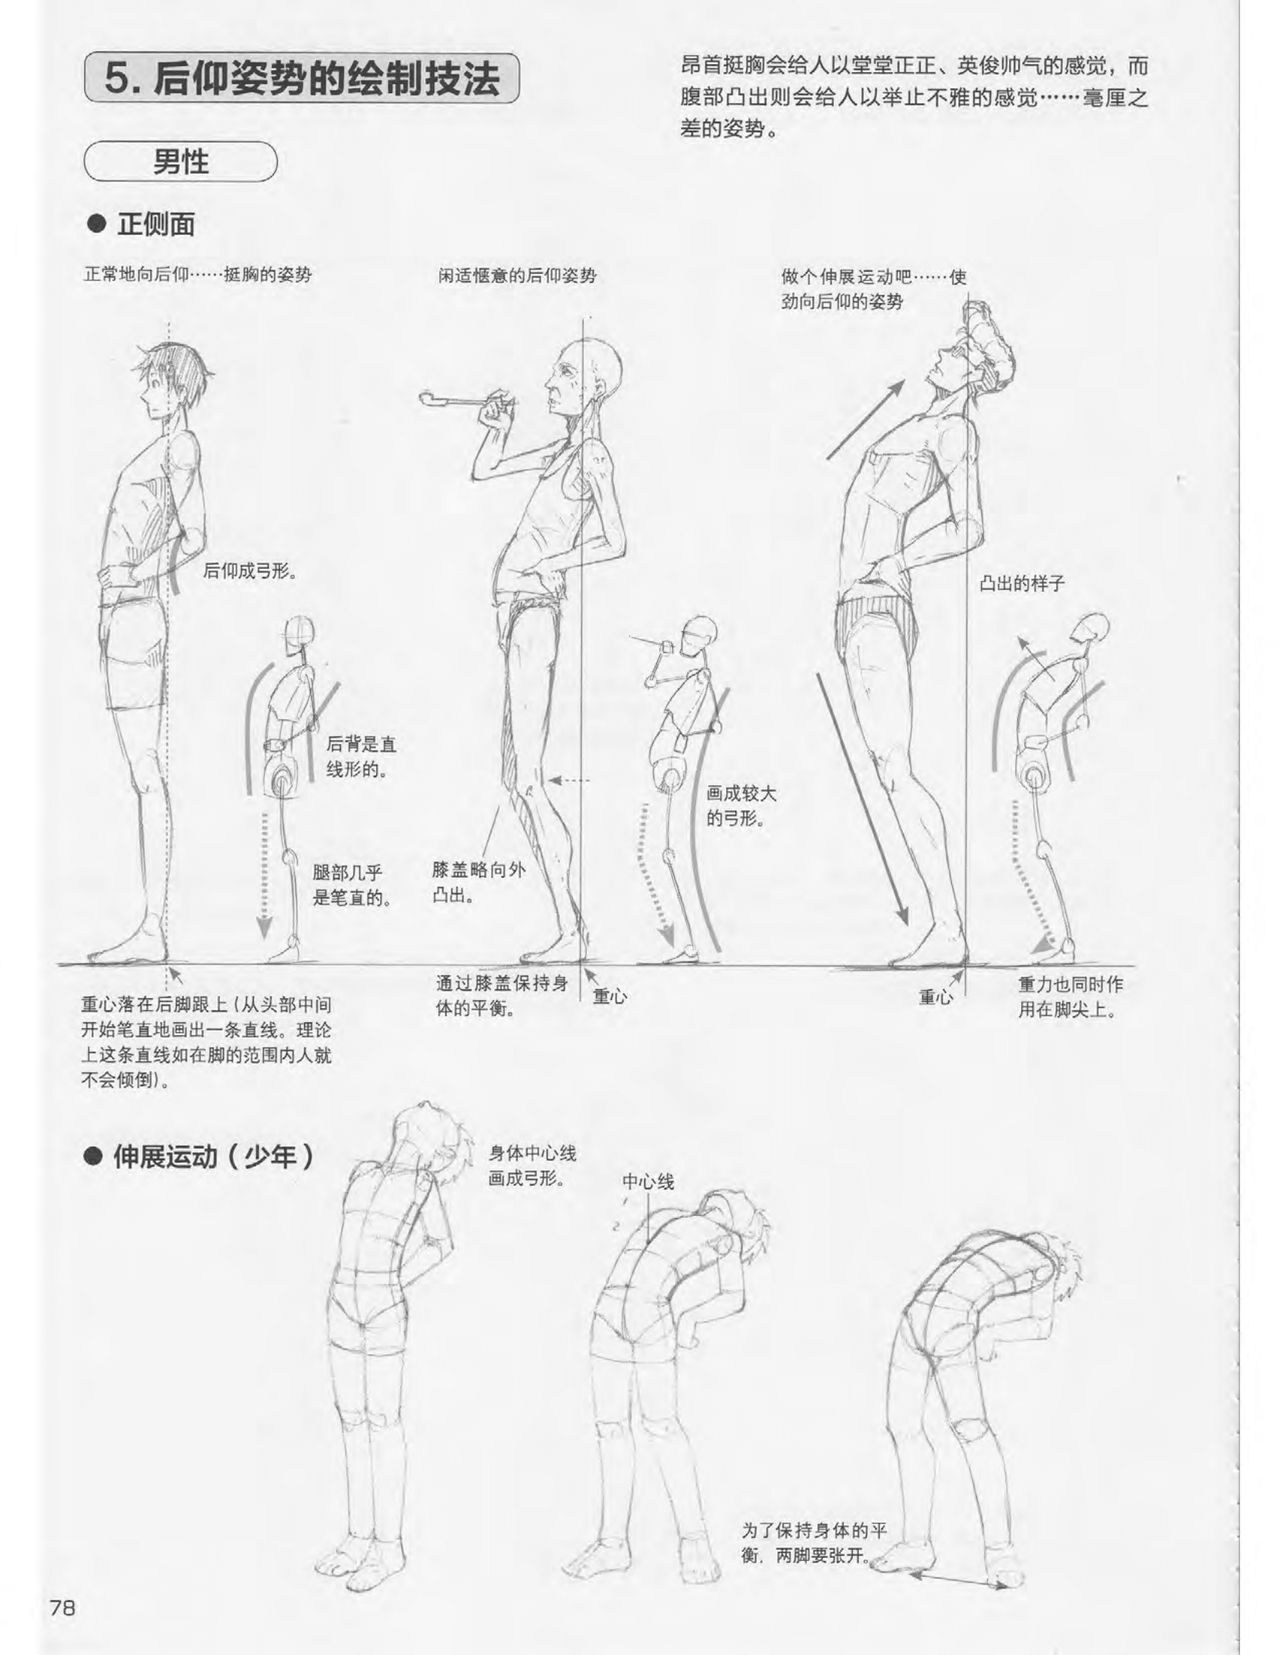 Japanese Manga Master Lecture 3: Lin Akira and Kakumaru Maru Talk About Glamorous Character Modeling 78